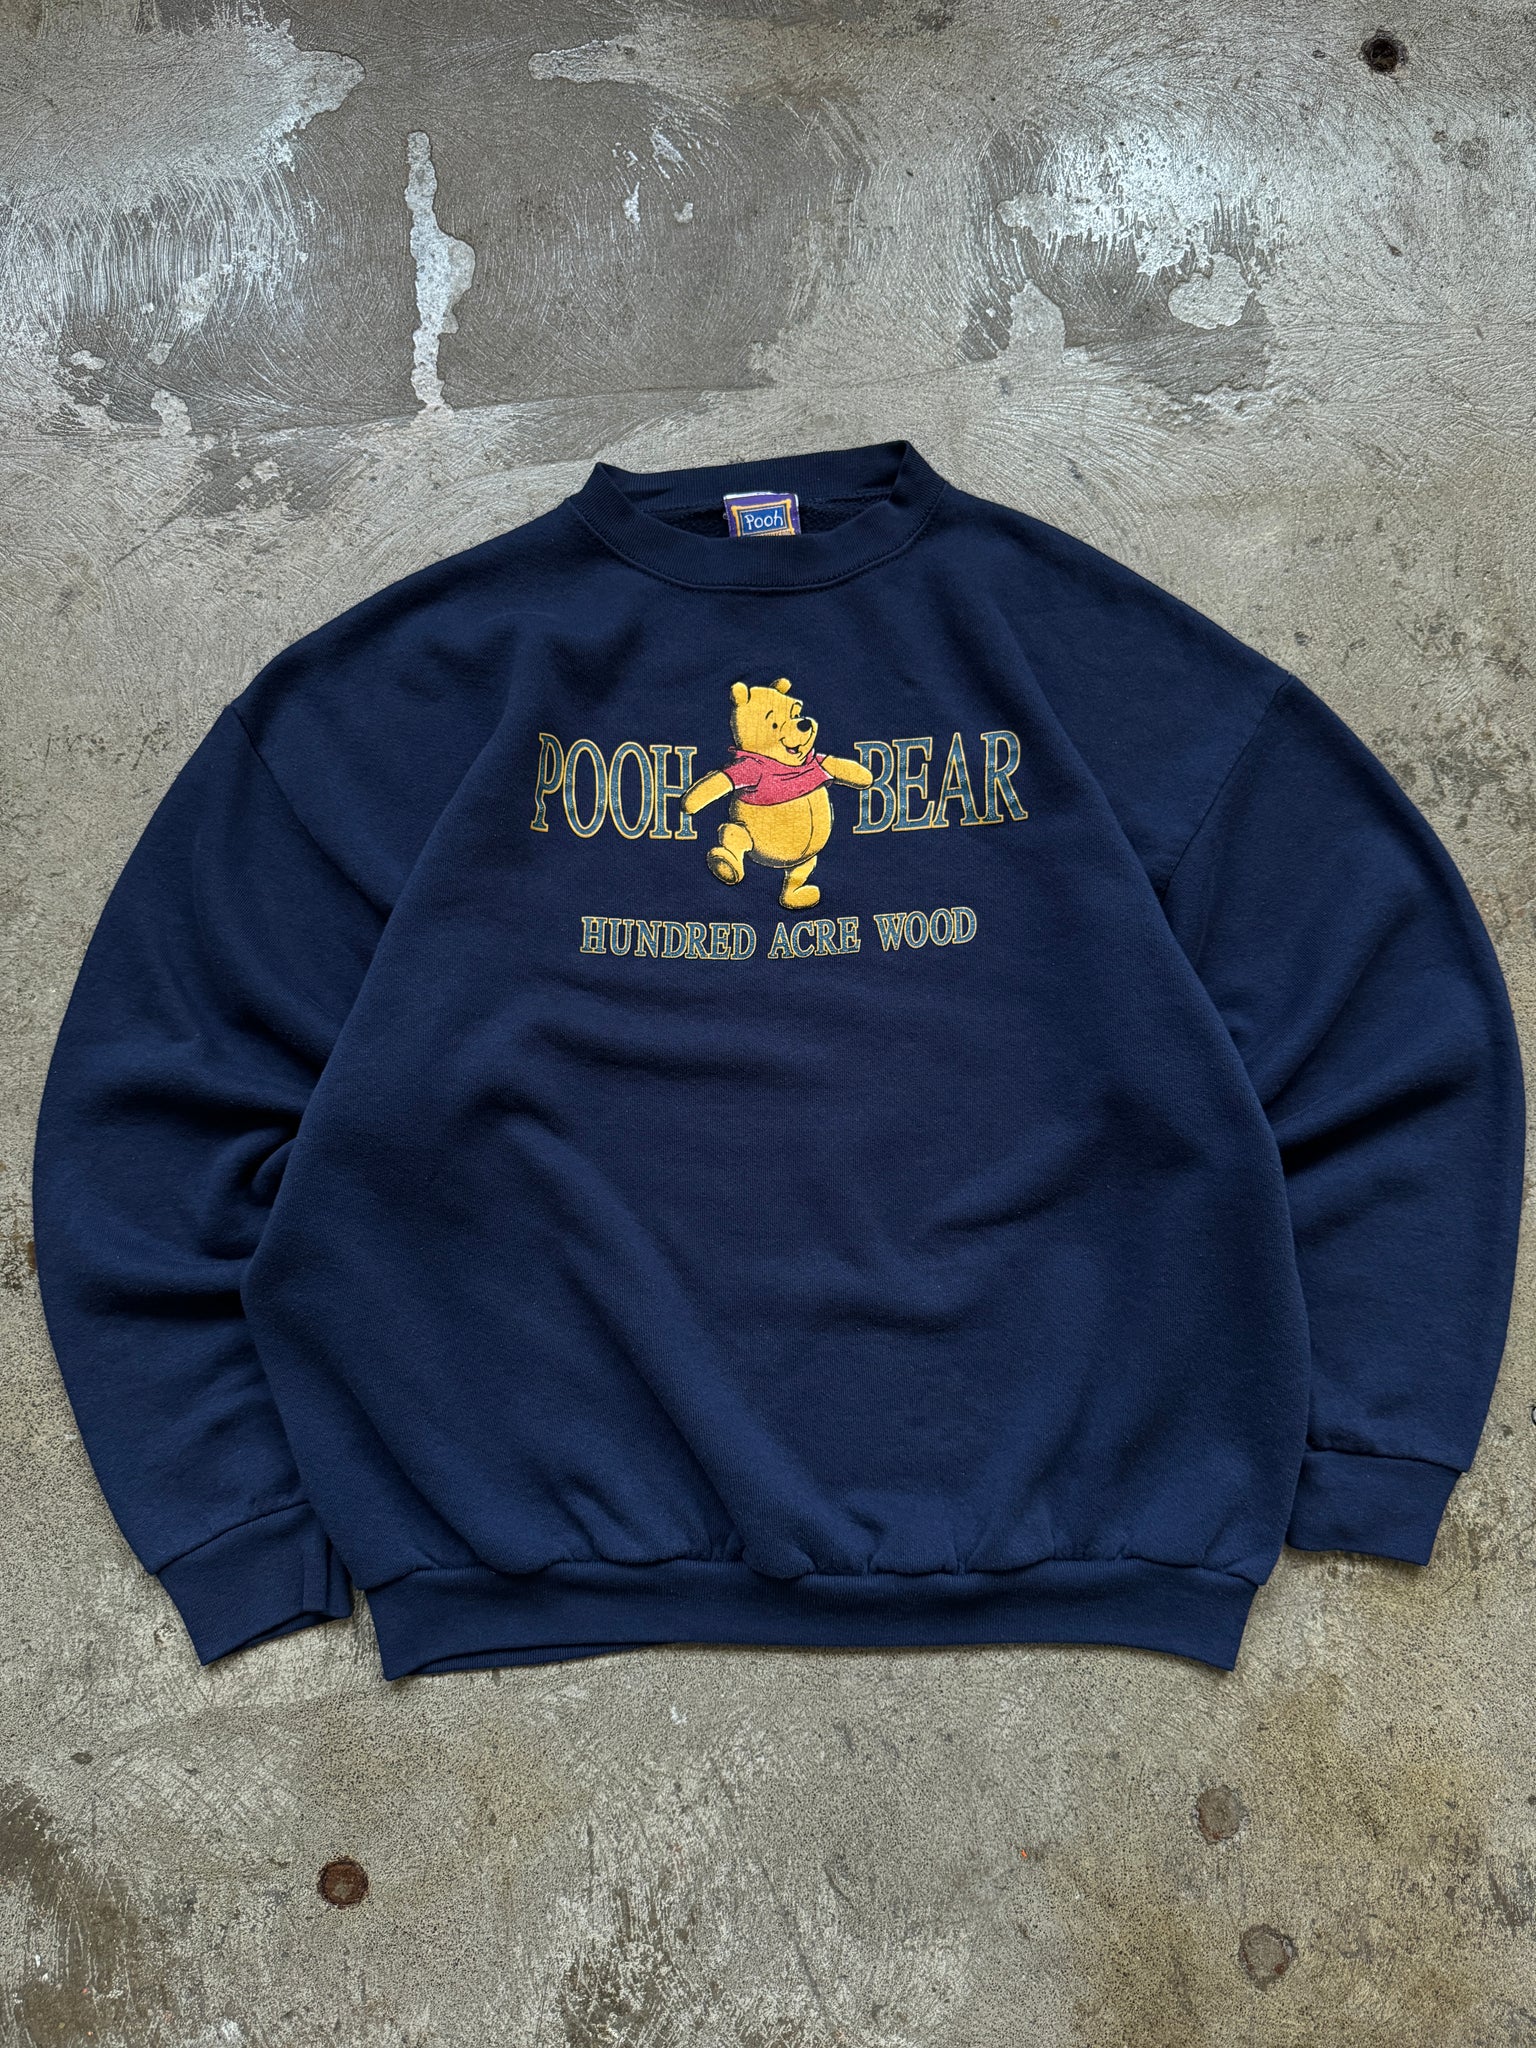 Vintage Pooh Bear Sweatshirt (L)